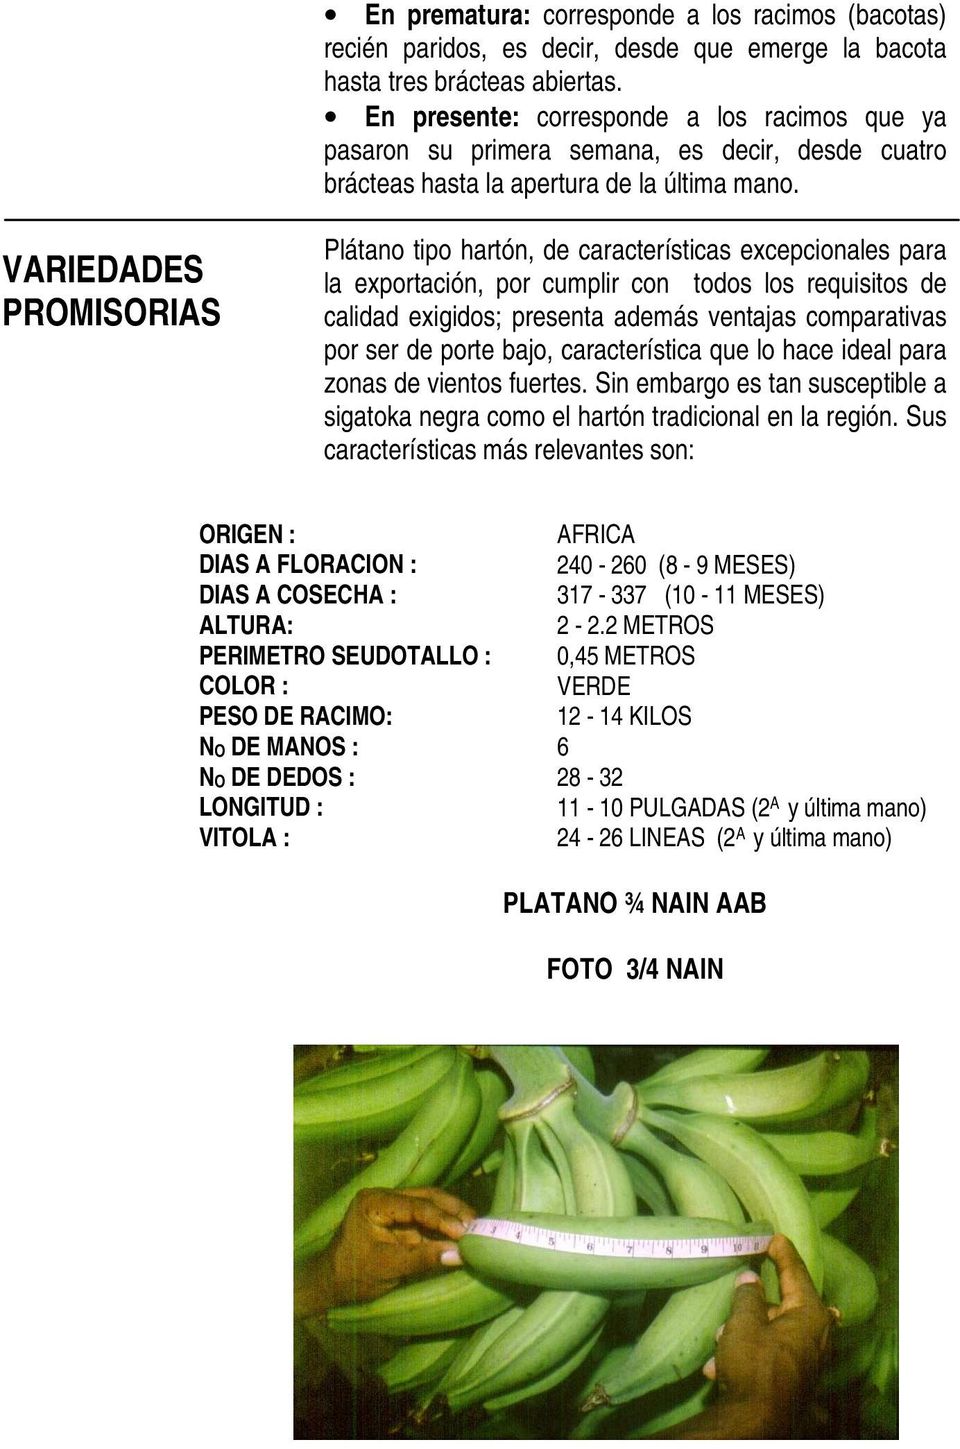 VARIEDADES PROMISORIAS Plátano tipo hartón, de características excepcionales para la exportación, por cumplir con todos los requisitos de calidad exigidos; presenta además ventajas comparativas por